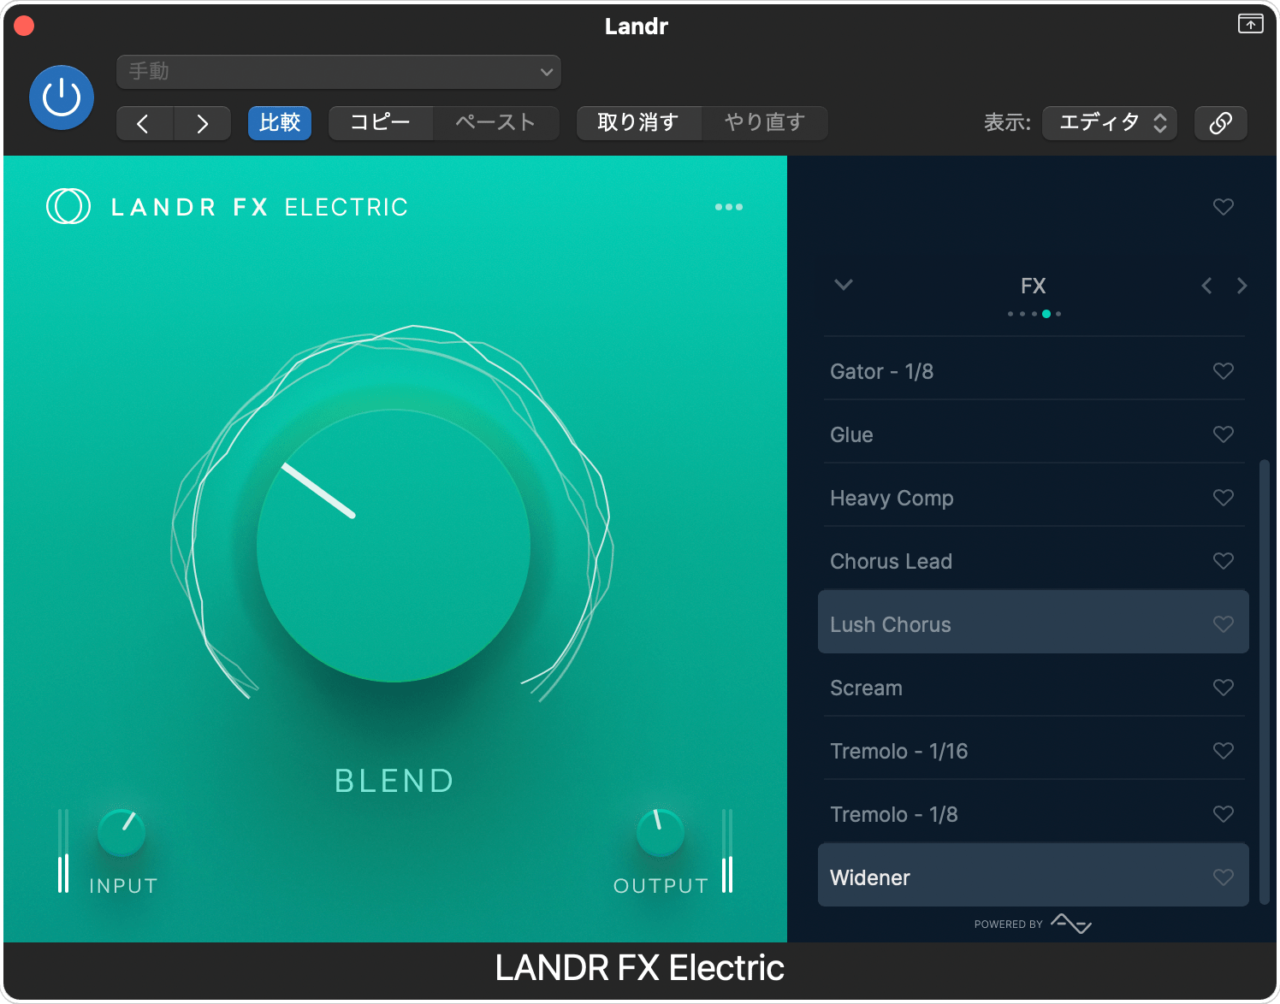 LANDR FX Suite - VST Effects Plugin Bundle for All Instruments | LANDR